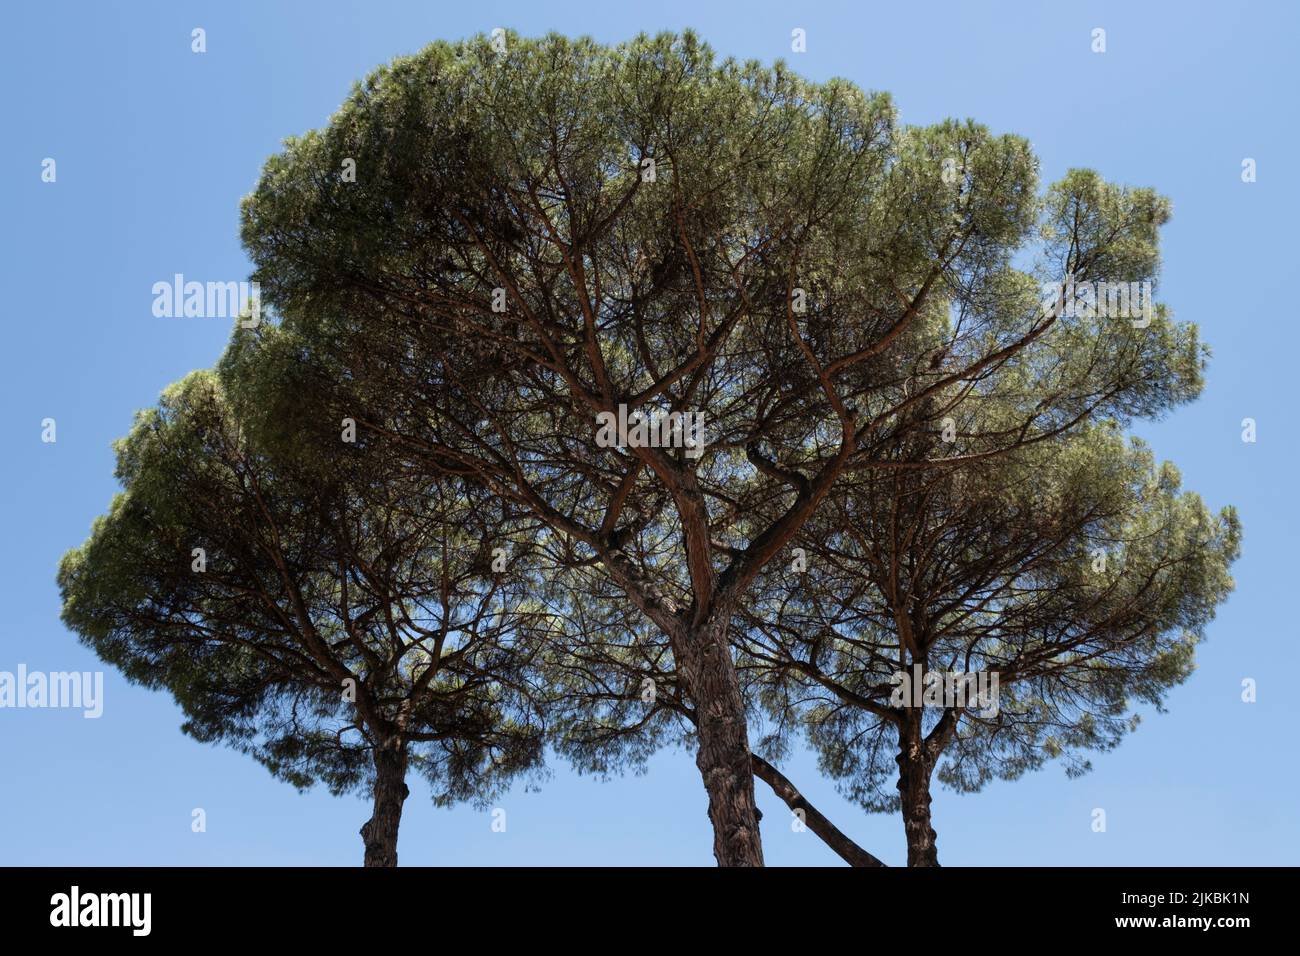 Ikonische Regenschirm- oder Sonnenschirmkiefern oder Pinus Pinea mit hohen und dünnen Stämmen, die weit verbreitete Nadeldächer hoch in der Luft in Rom unterstützen Stockfoto